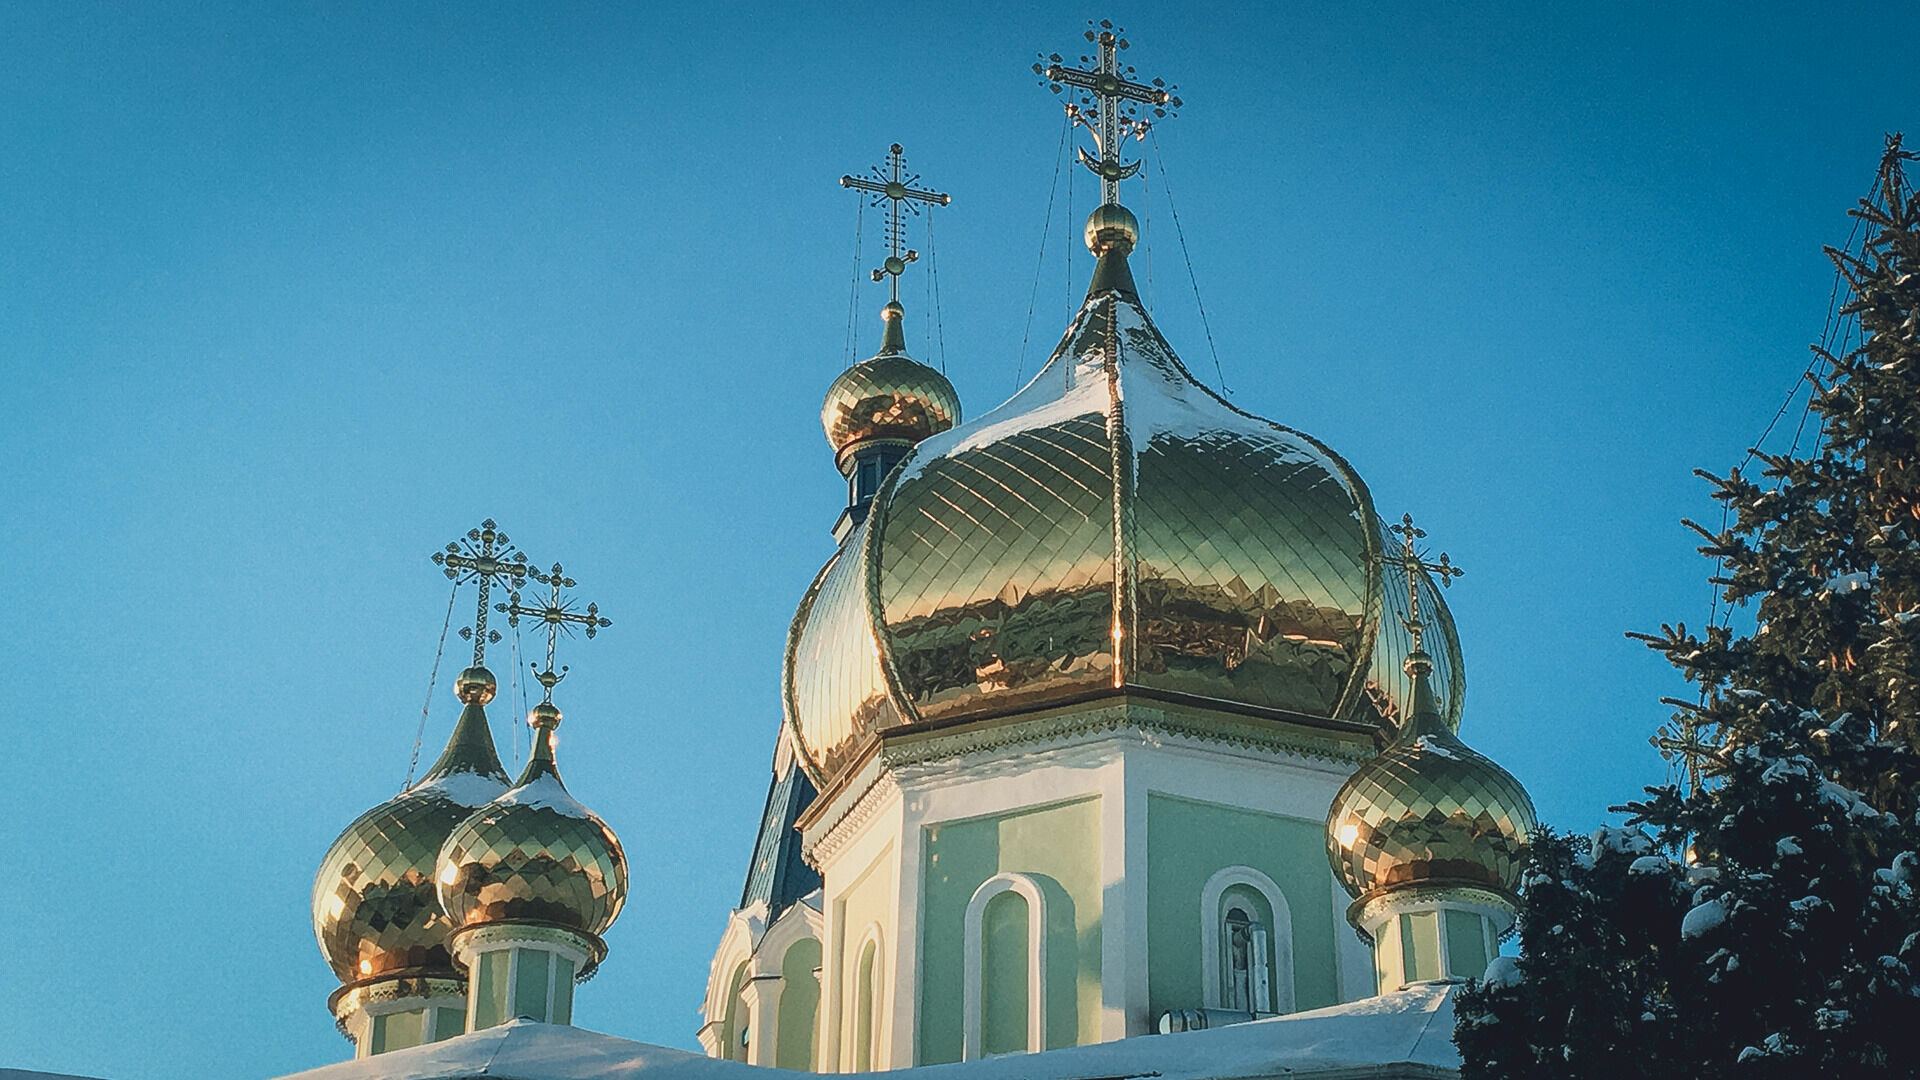  Великий пост готовит православного к празднованию Пасхи — 16 апреля.